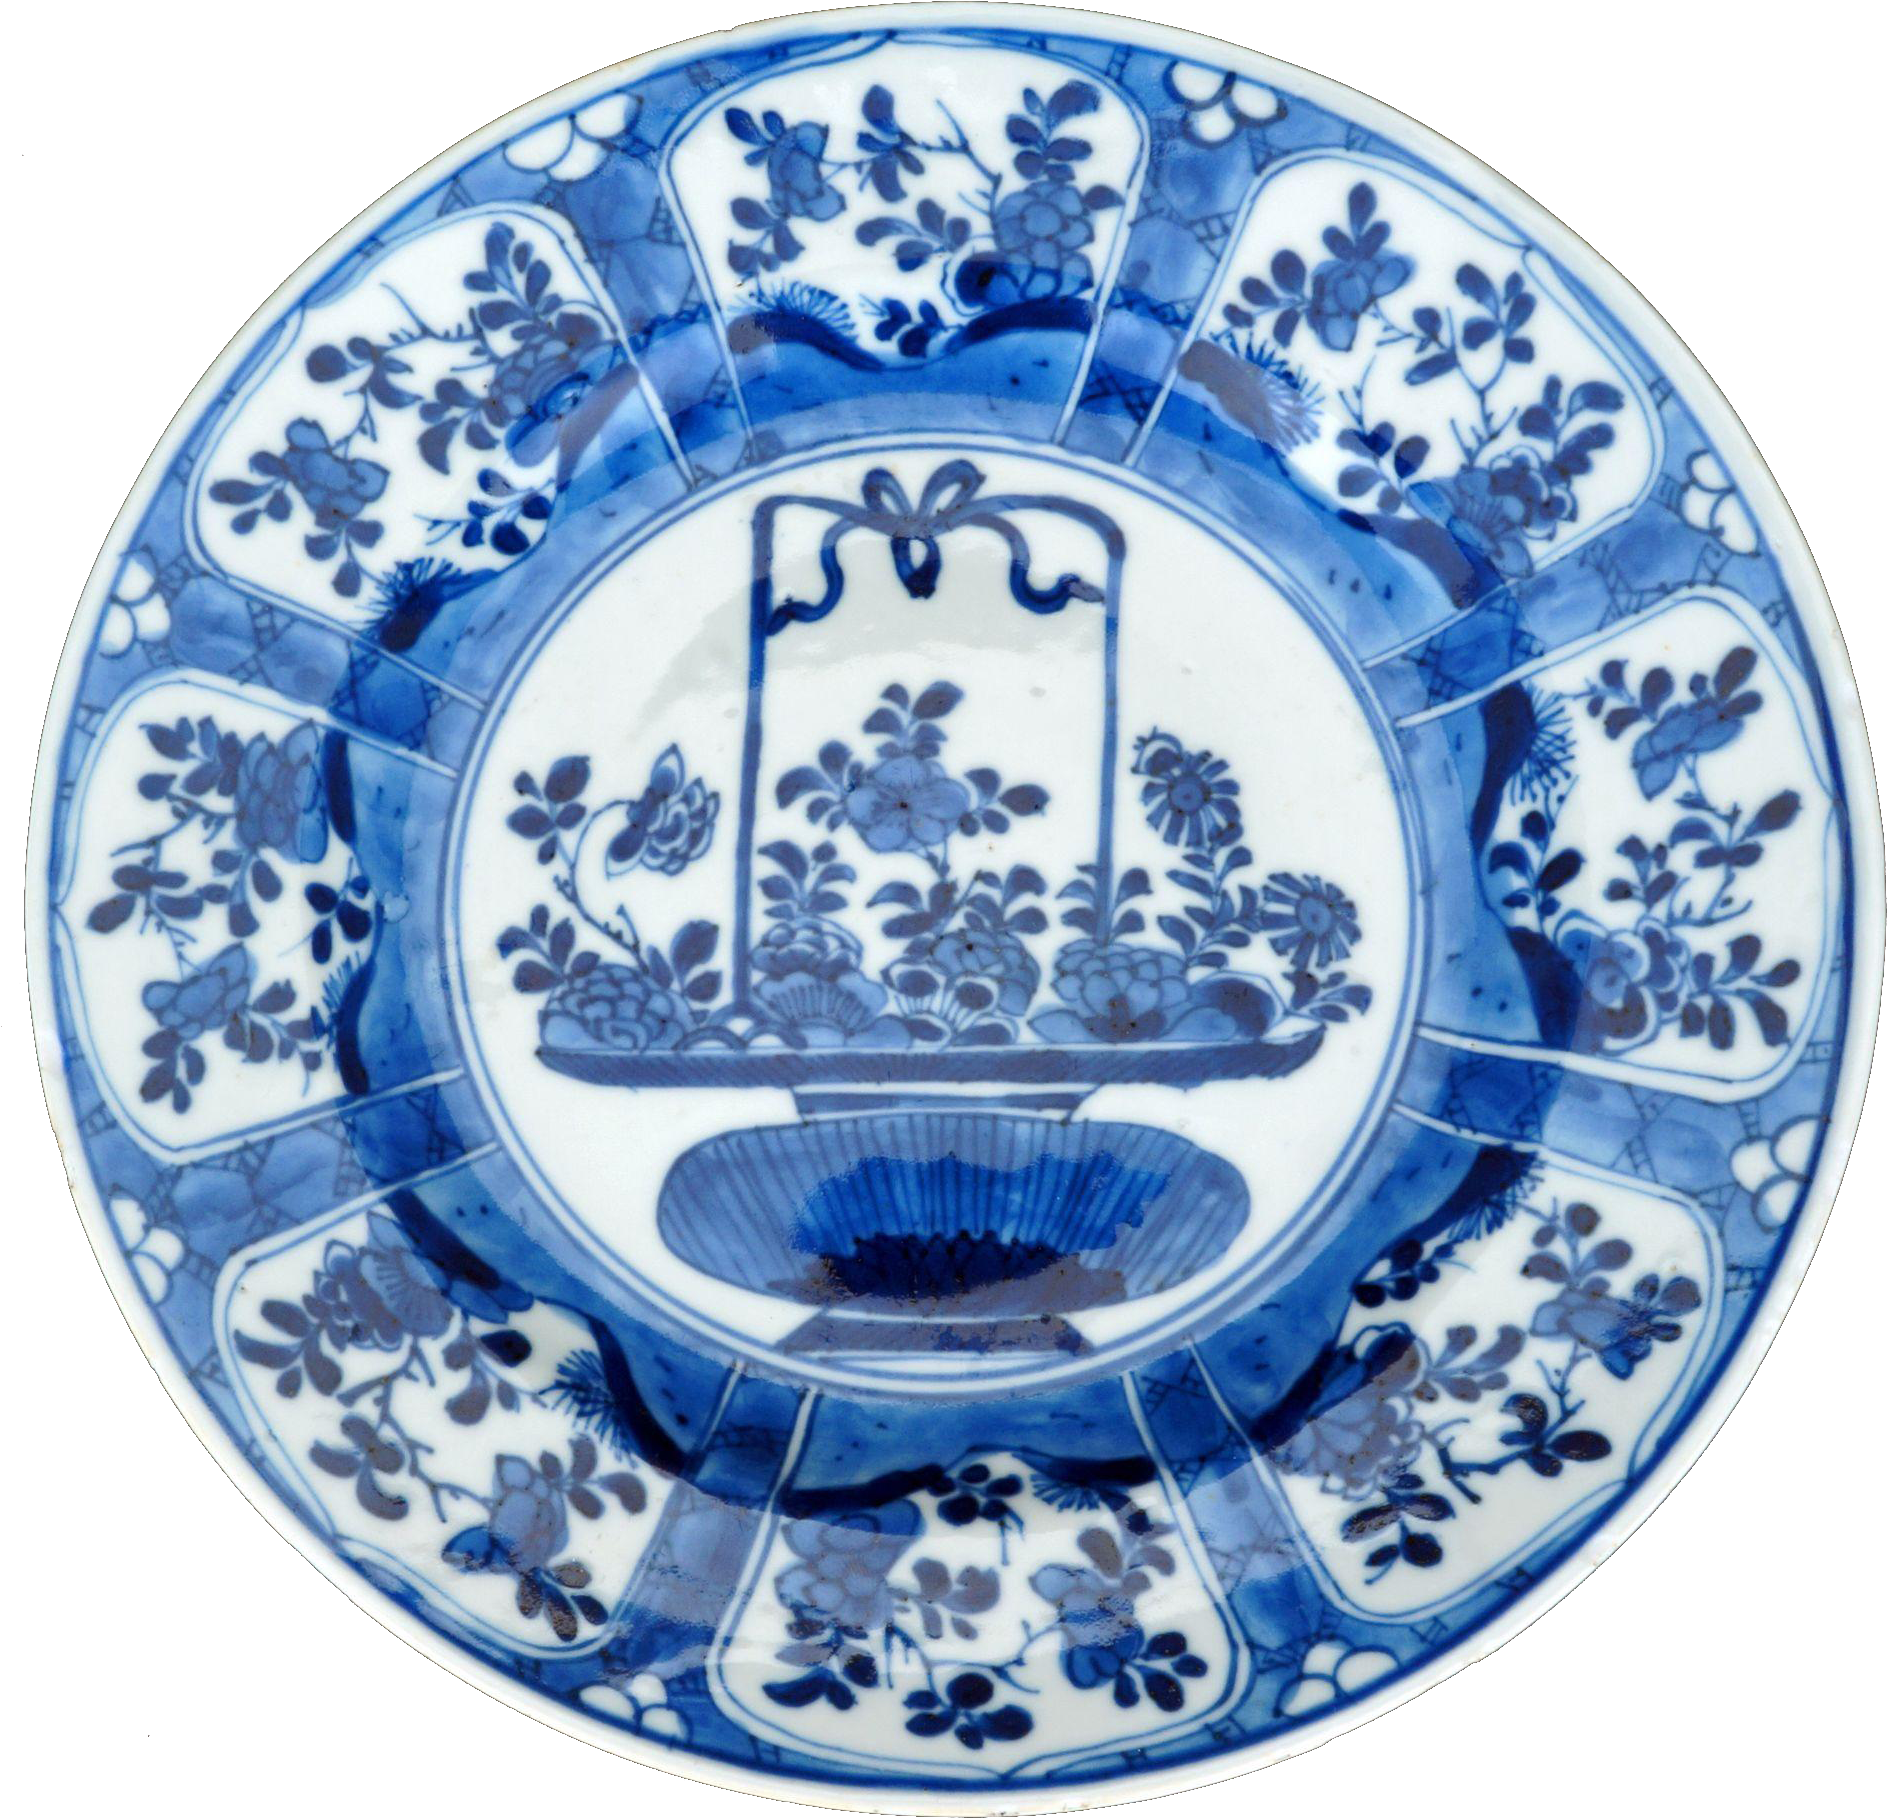 Pratos de porcelana chinesa azul e branca, porcelana